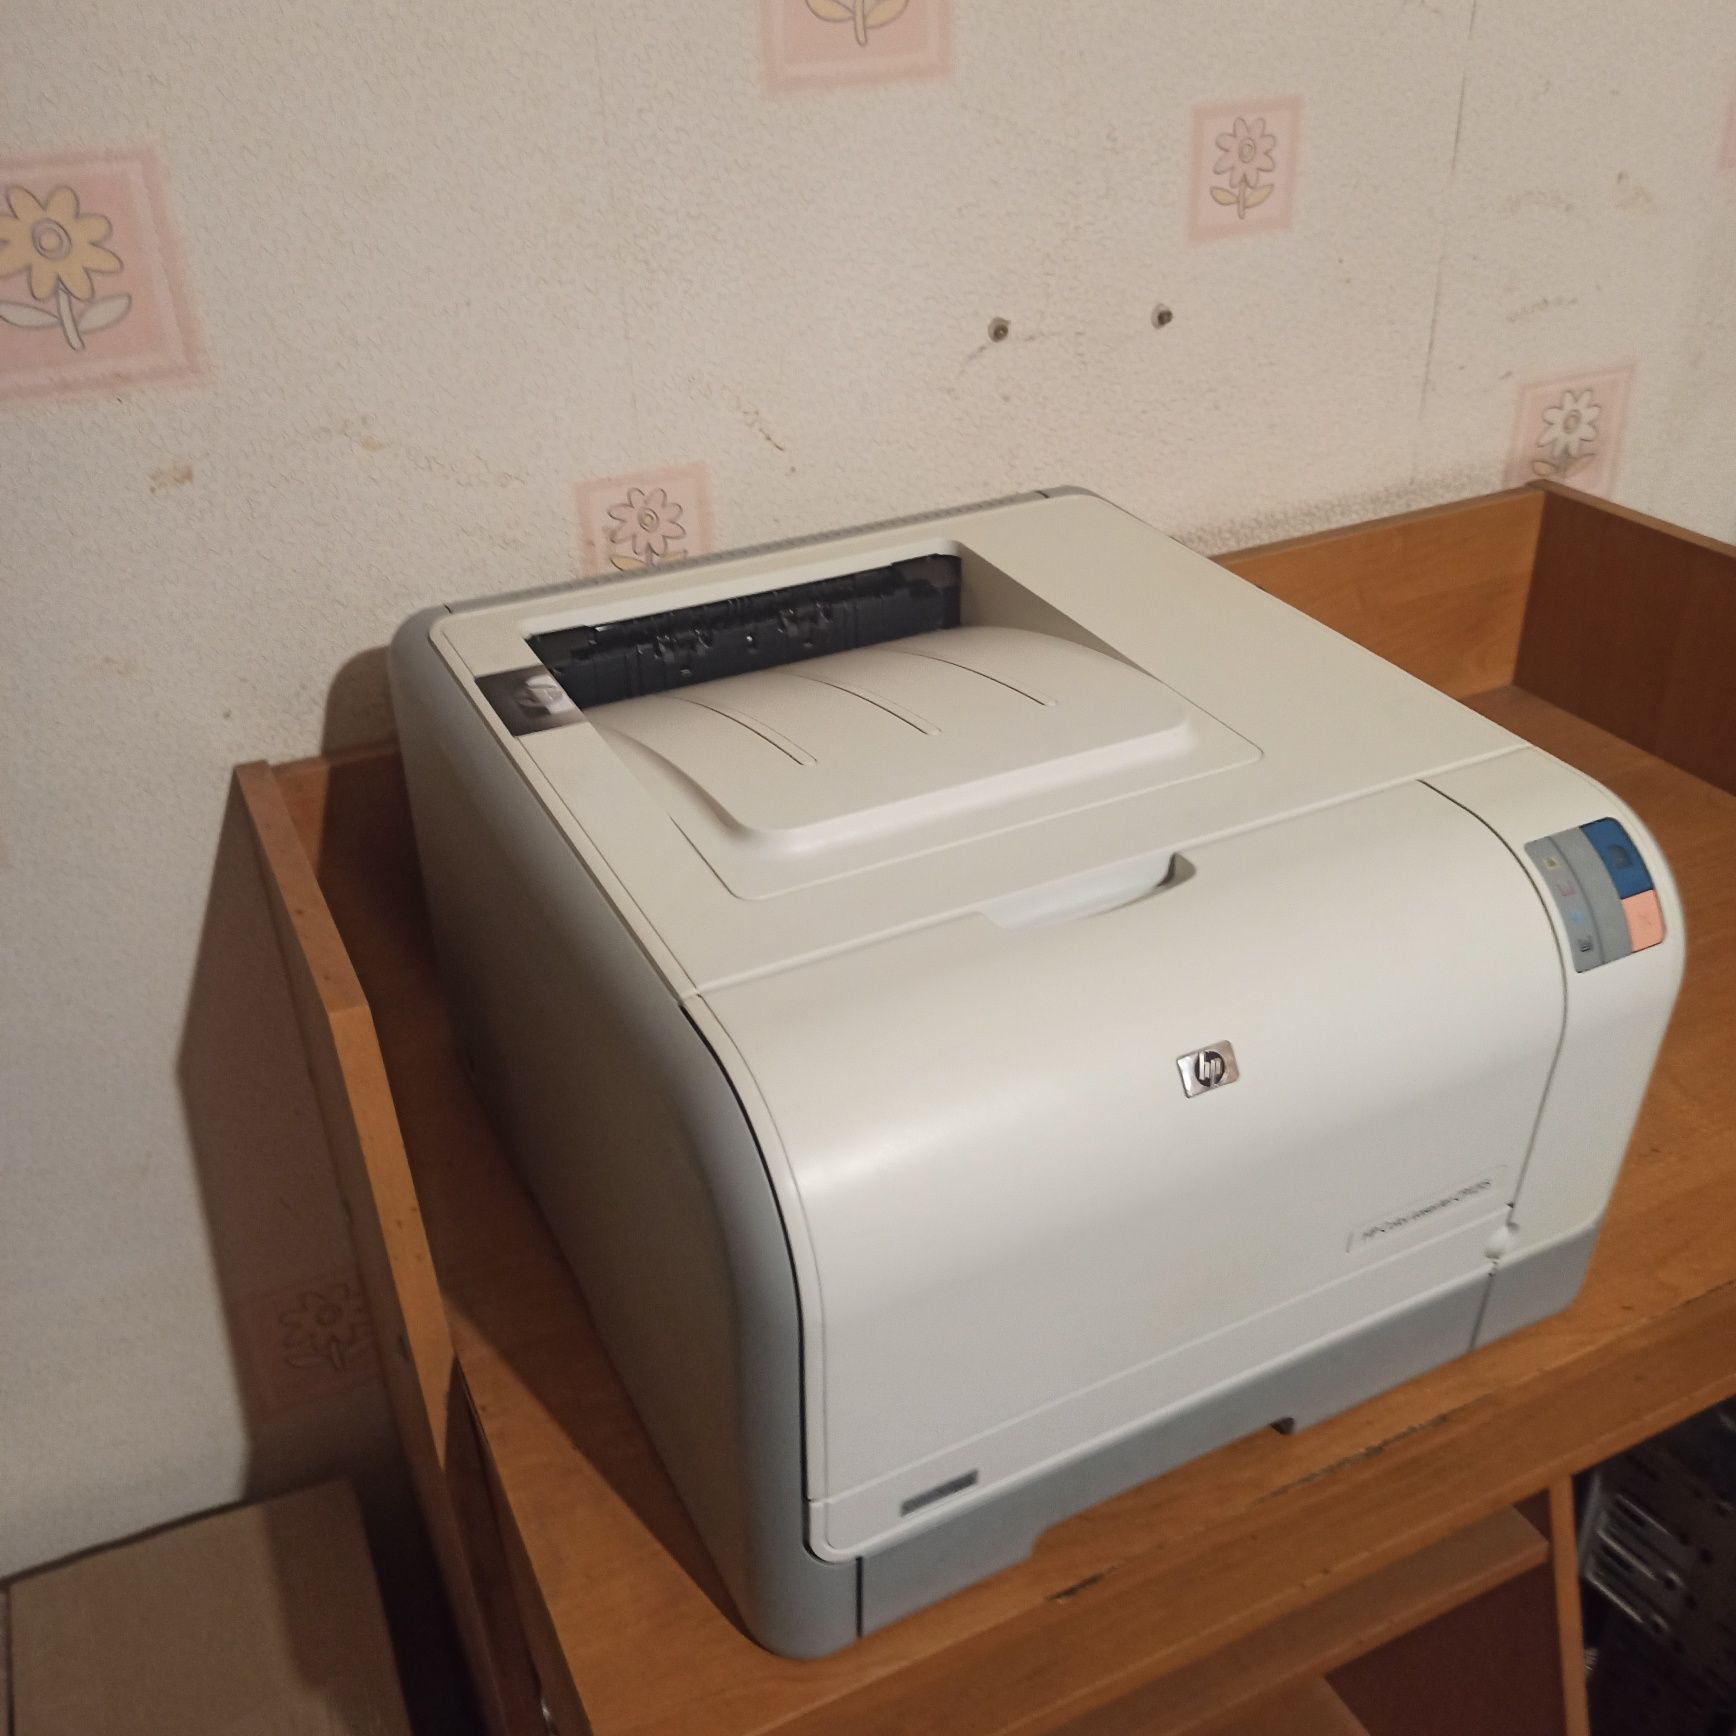 Цветной лазерный принтер, практически новый!